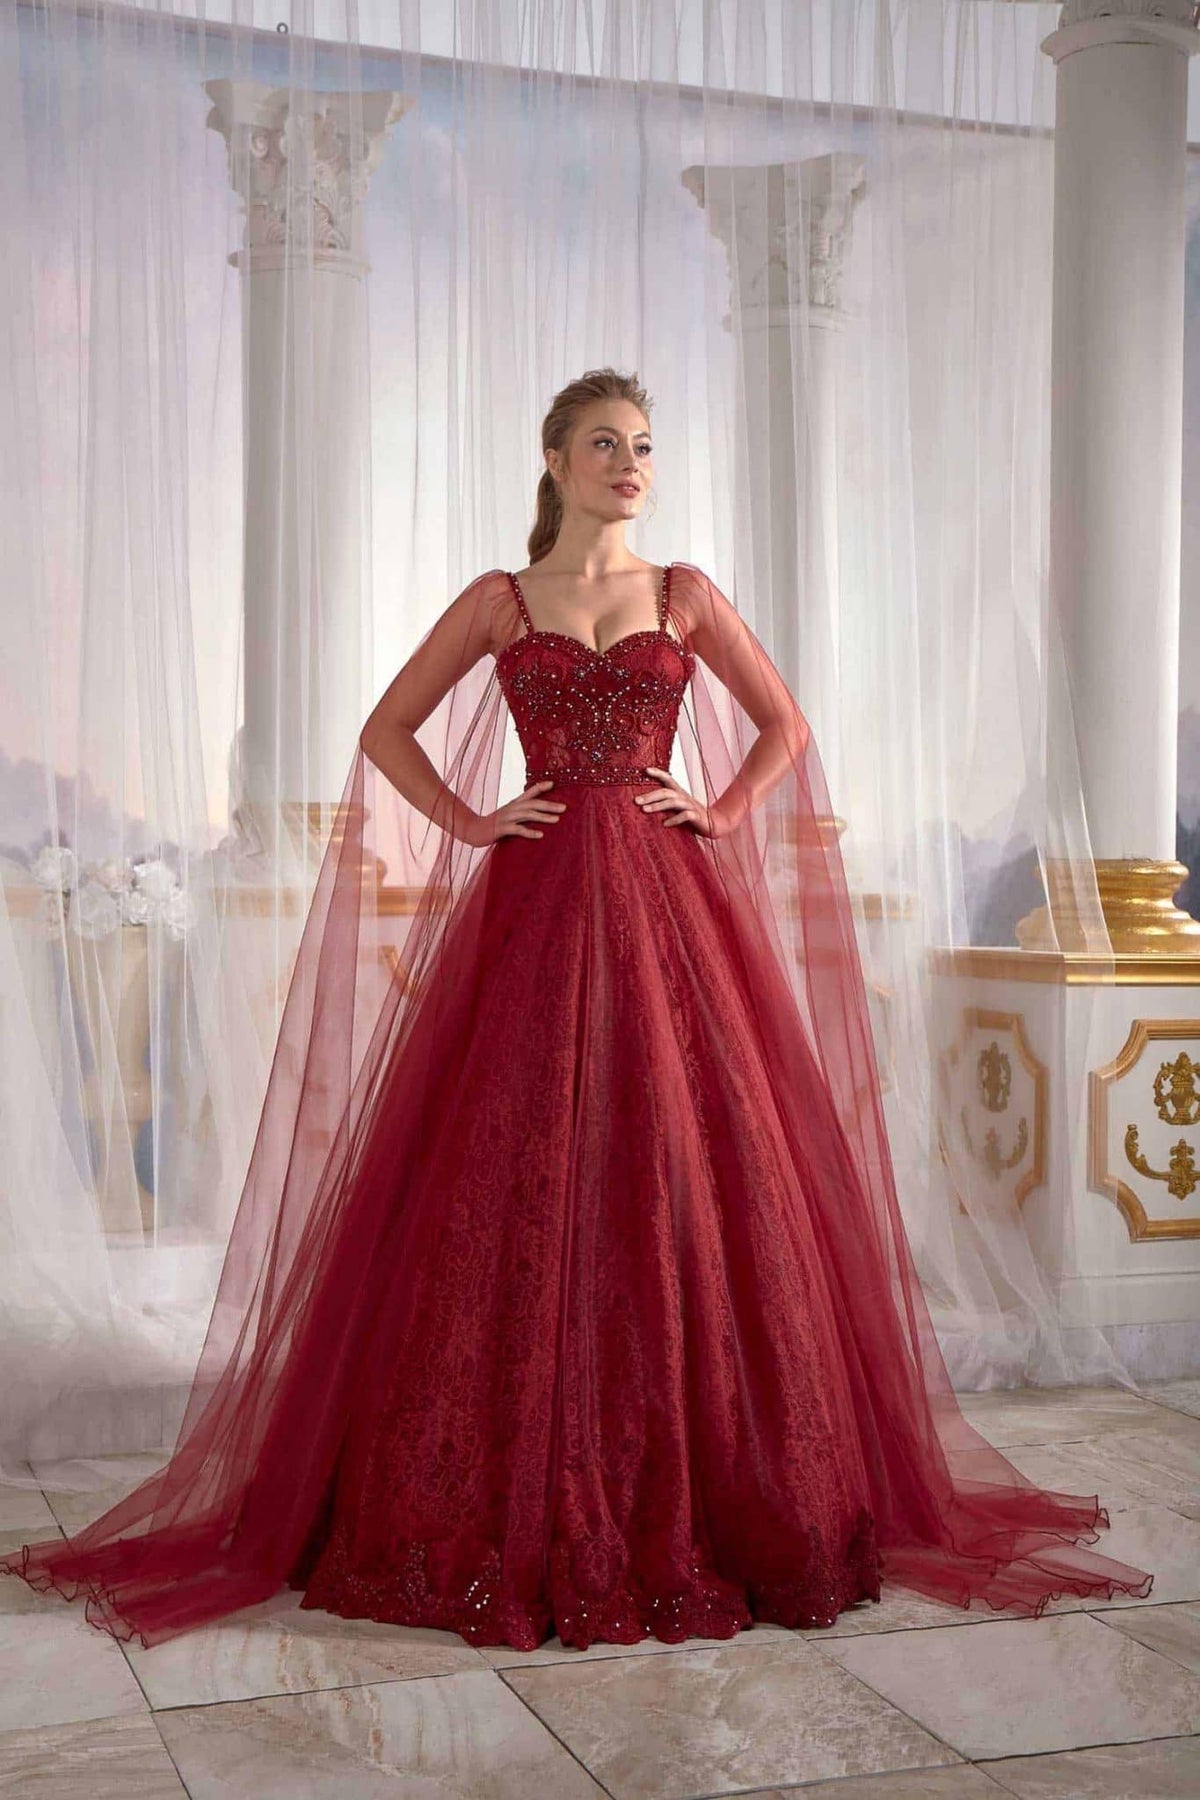 long gown dresses online Burgundy Prom Dress Cold Shoulder Straps Lace Appliques Tulle Veil Embellished Top Detail (2)